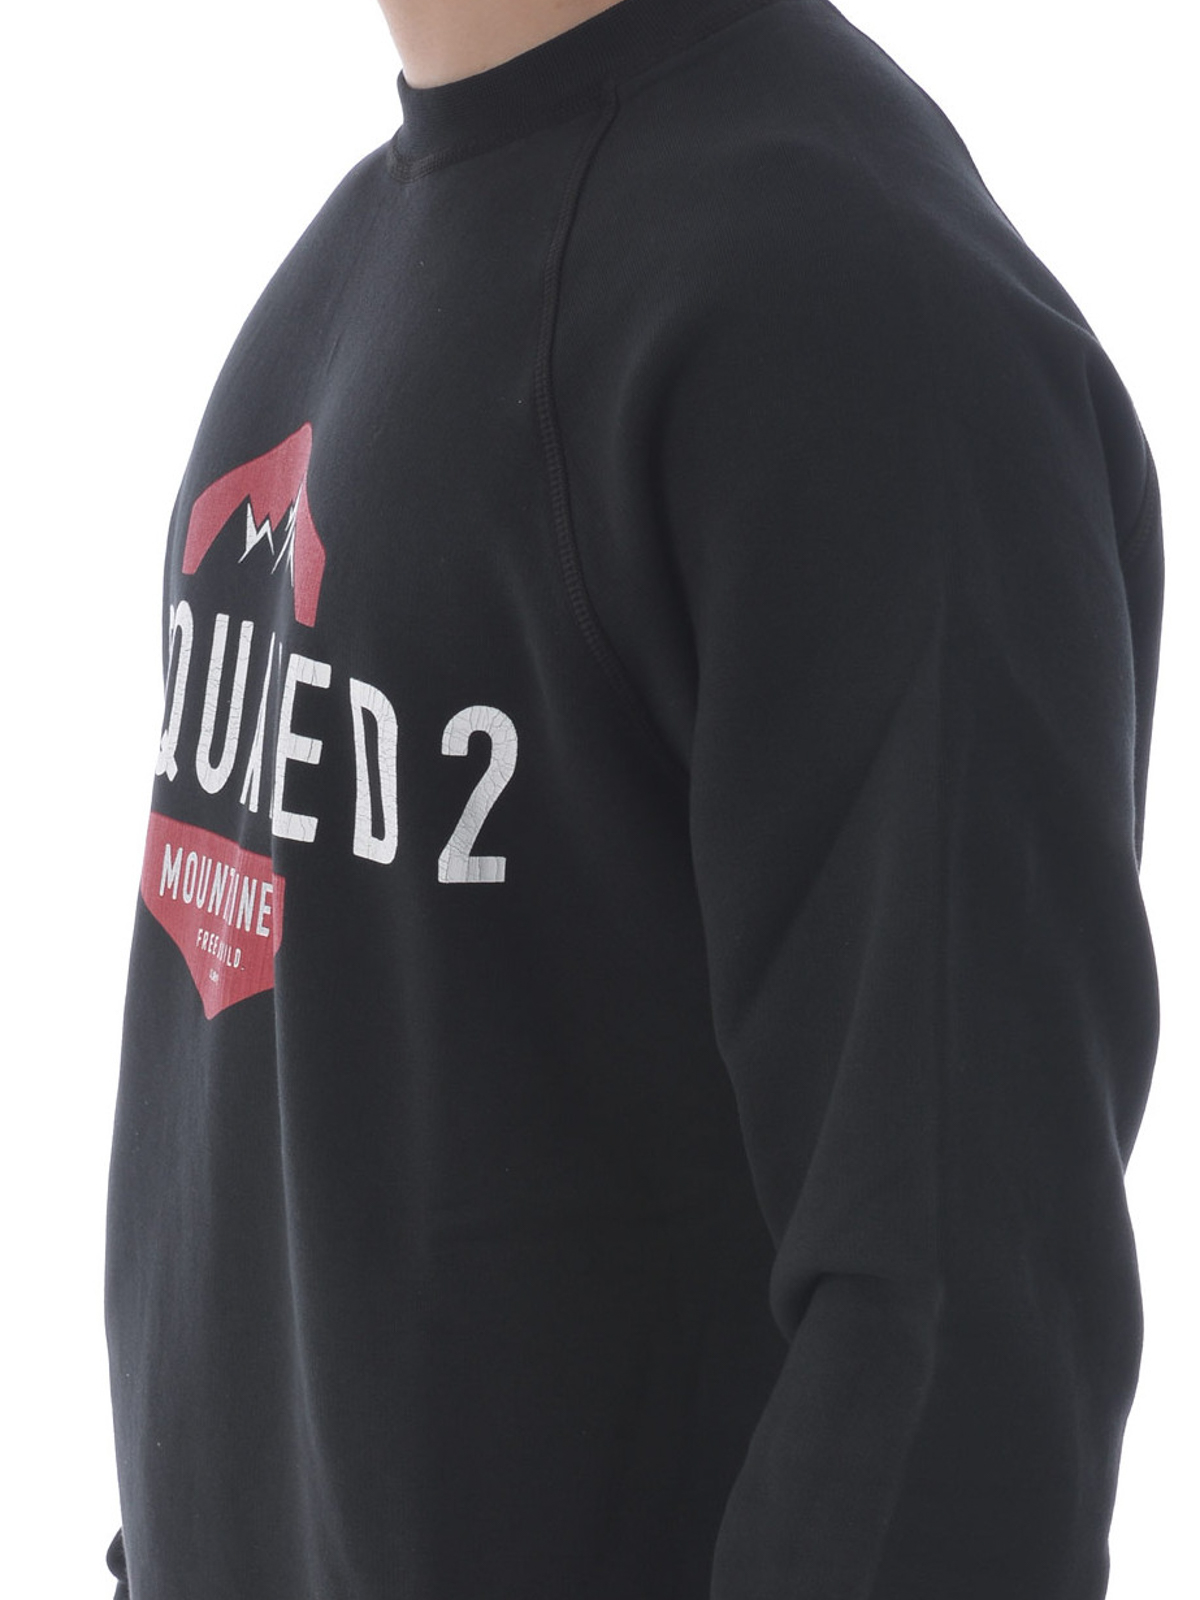 Dsquared2 - D2 Mountaineer sweatshirt 